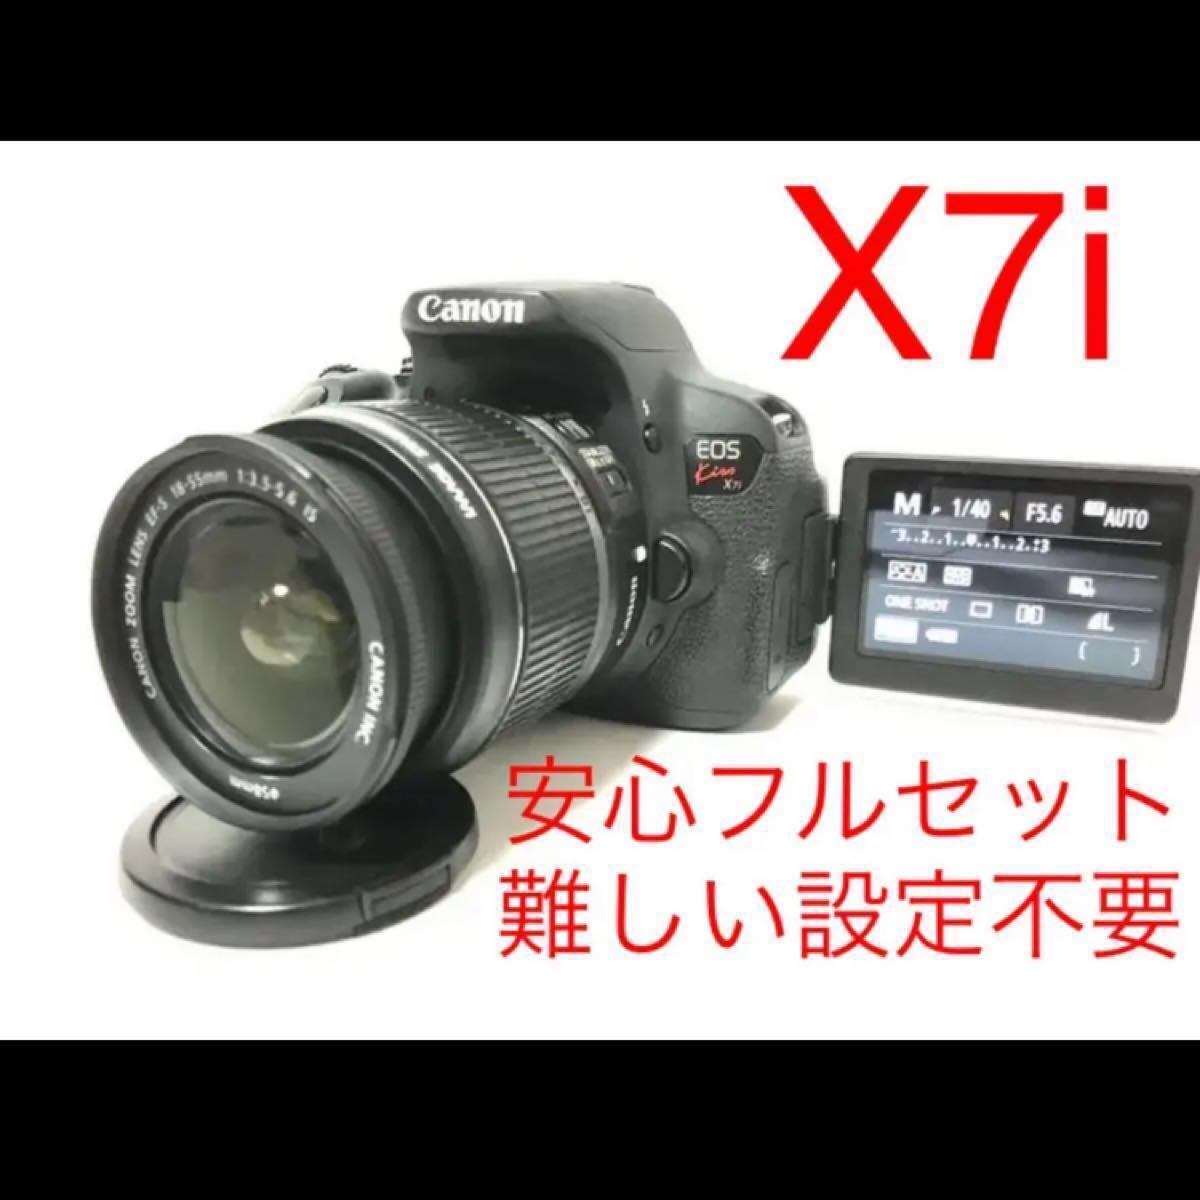 Canon EOS kiss X7i レンズ付き安心フルセット♪難しい設定不要♪即